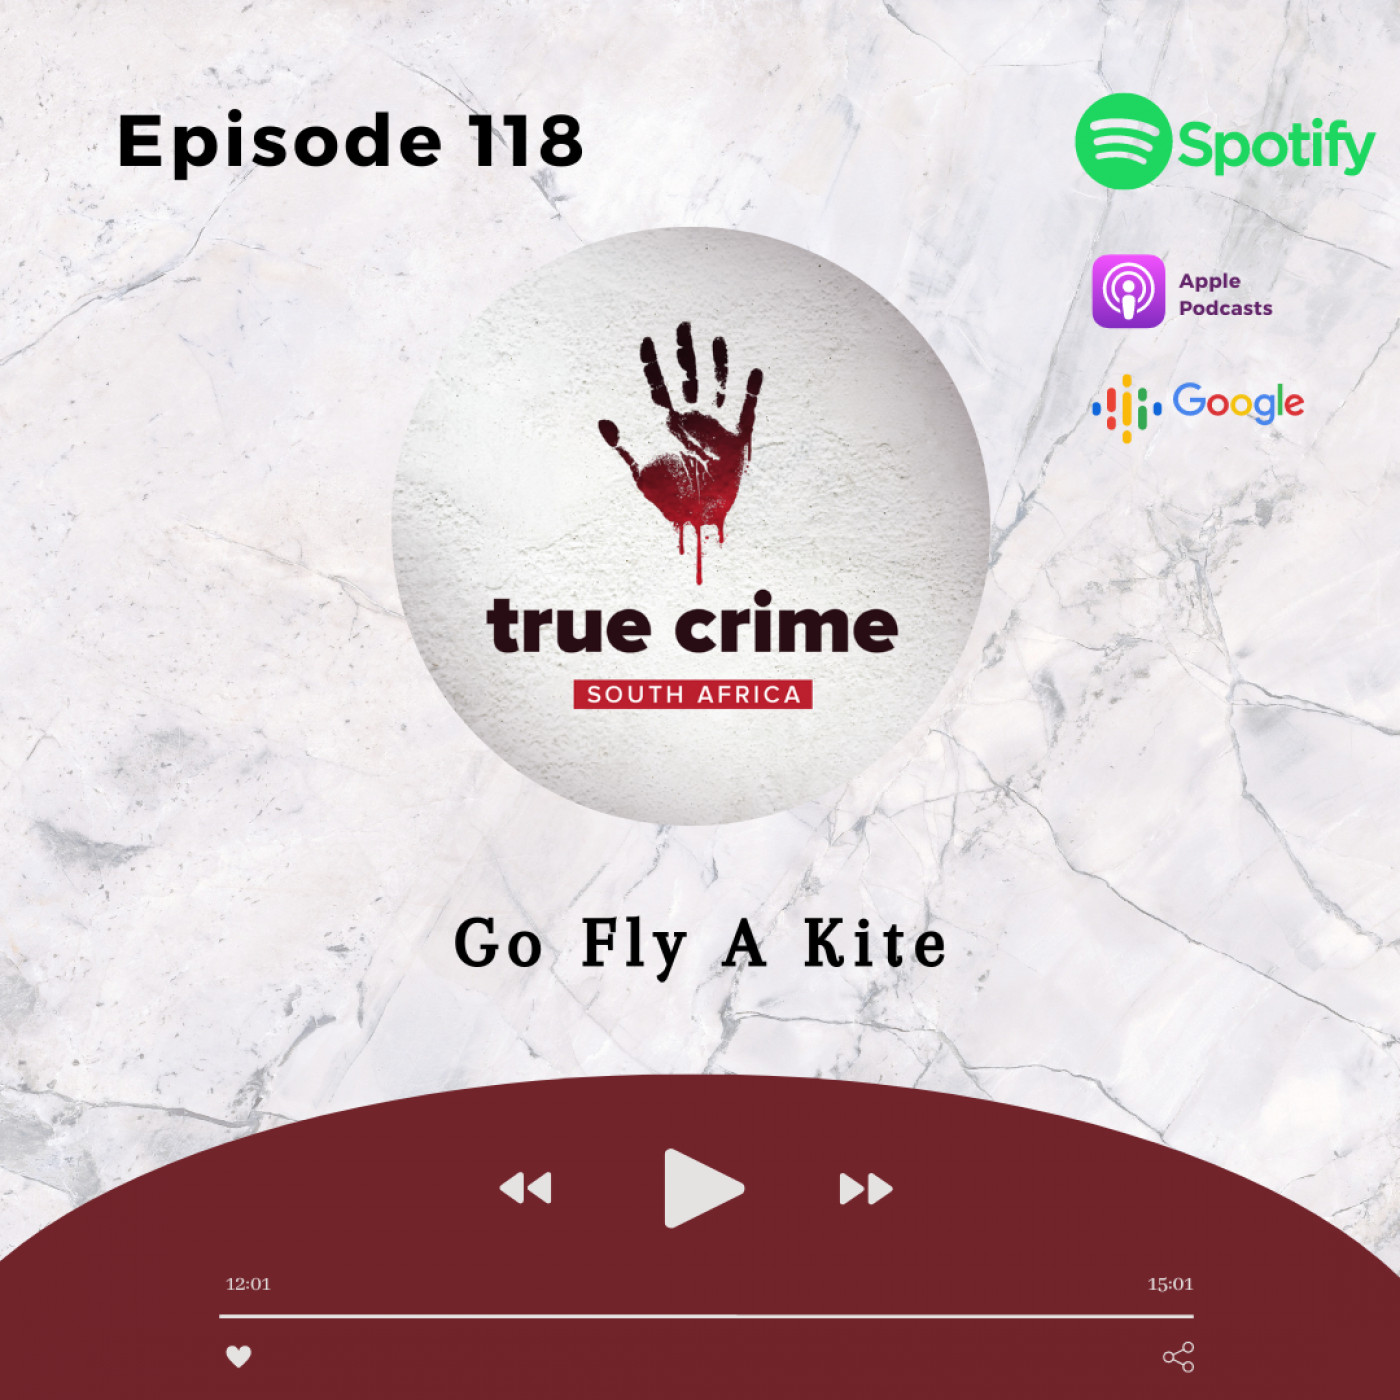 Episode 118 Go Fly A Kite